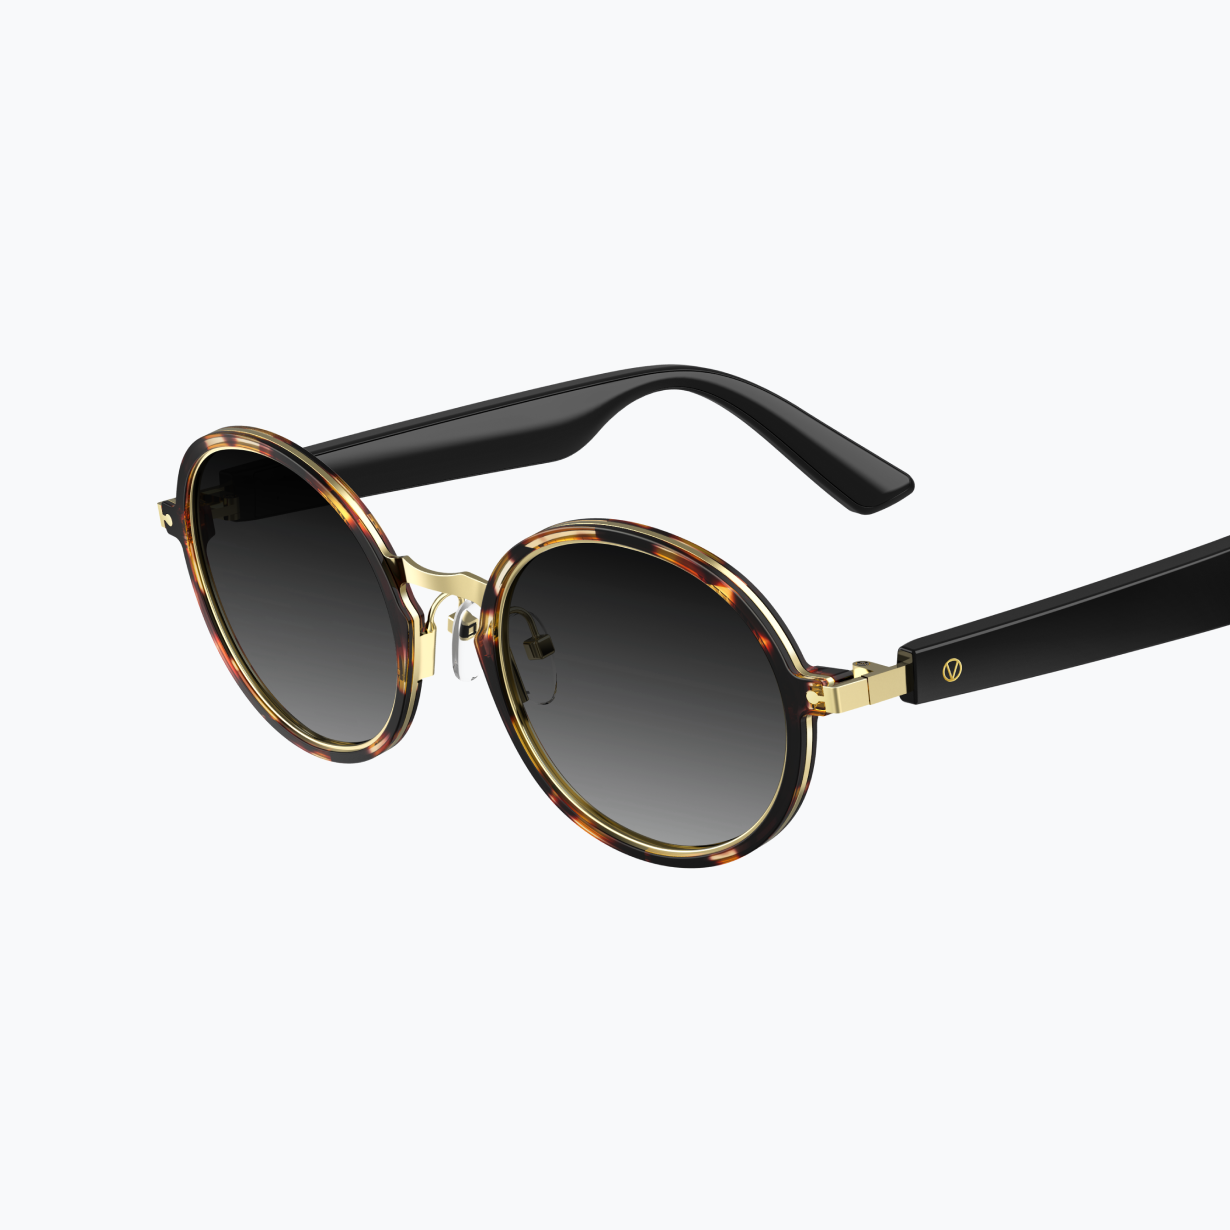 Vue Sunglasses | Vue Lite 2 - Lyra | Sunglasses | Vue Smart Glasses | Photochromic | Non-Corrective